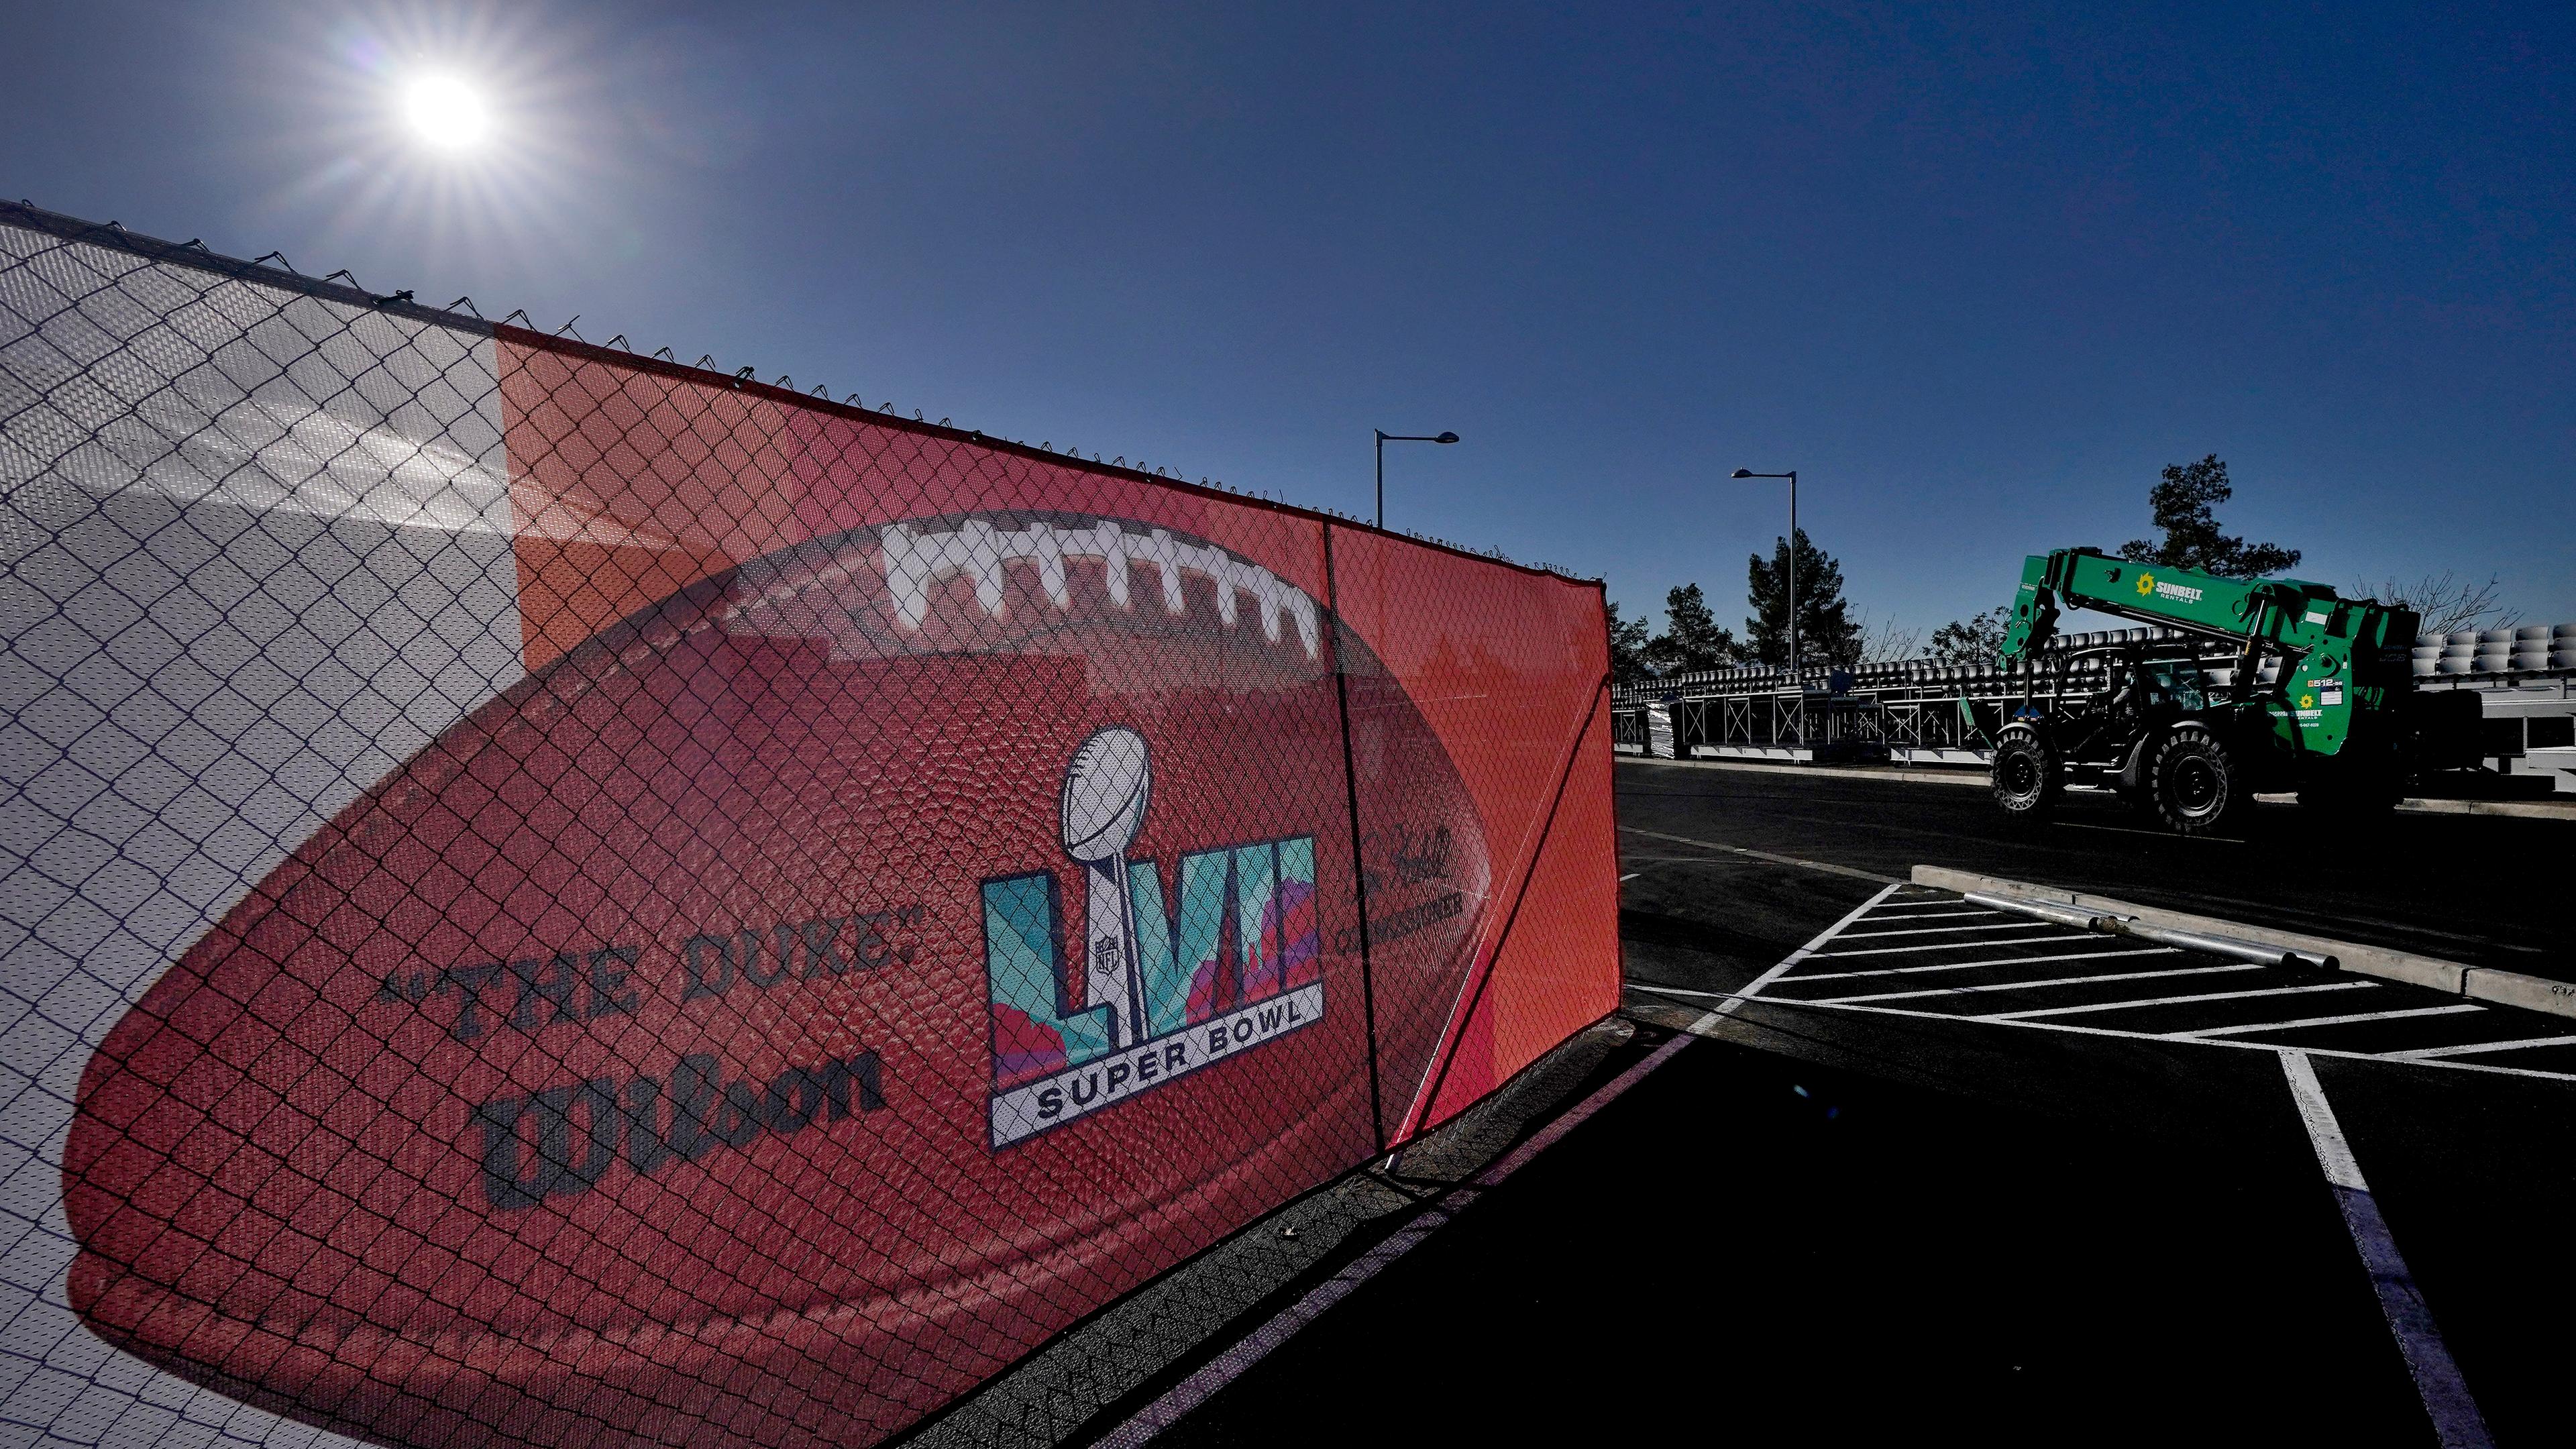 Ein Banner mit dem Super-Bowl-Logo hängt am Bauzaun. Die Sonne scheint.